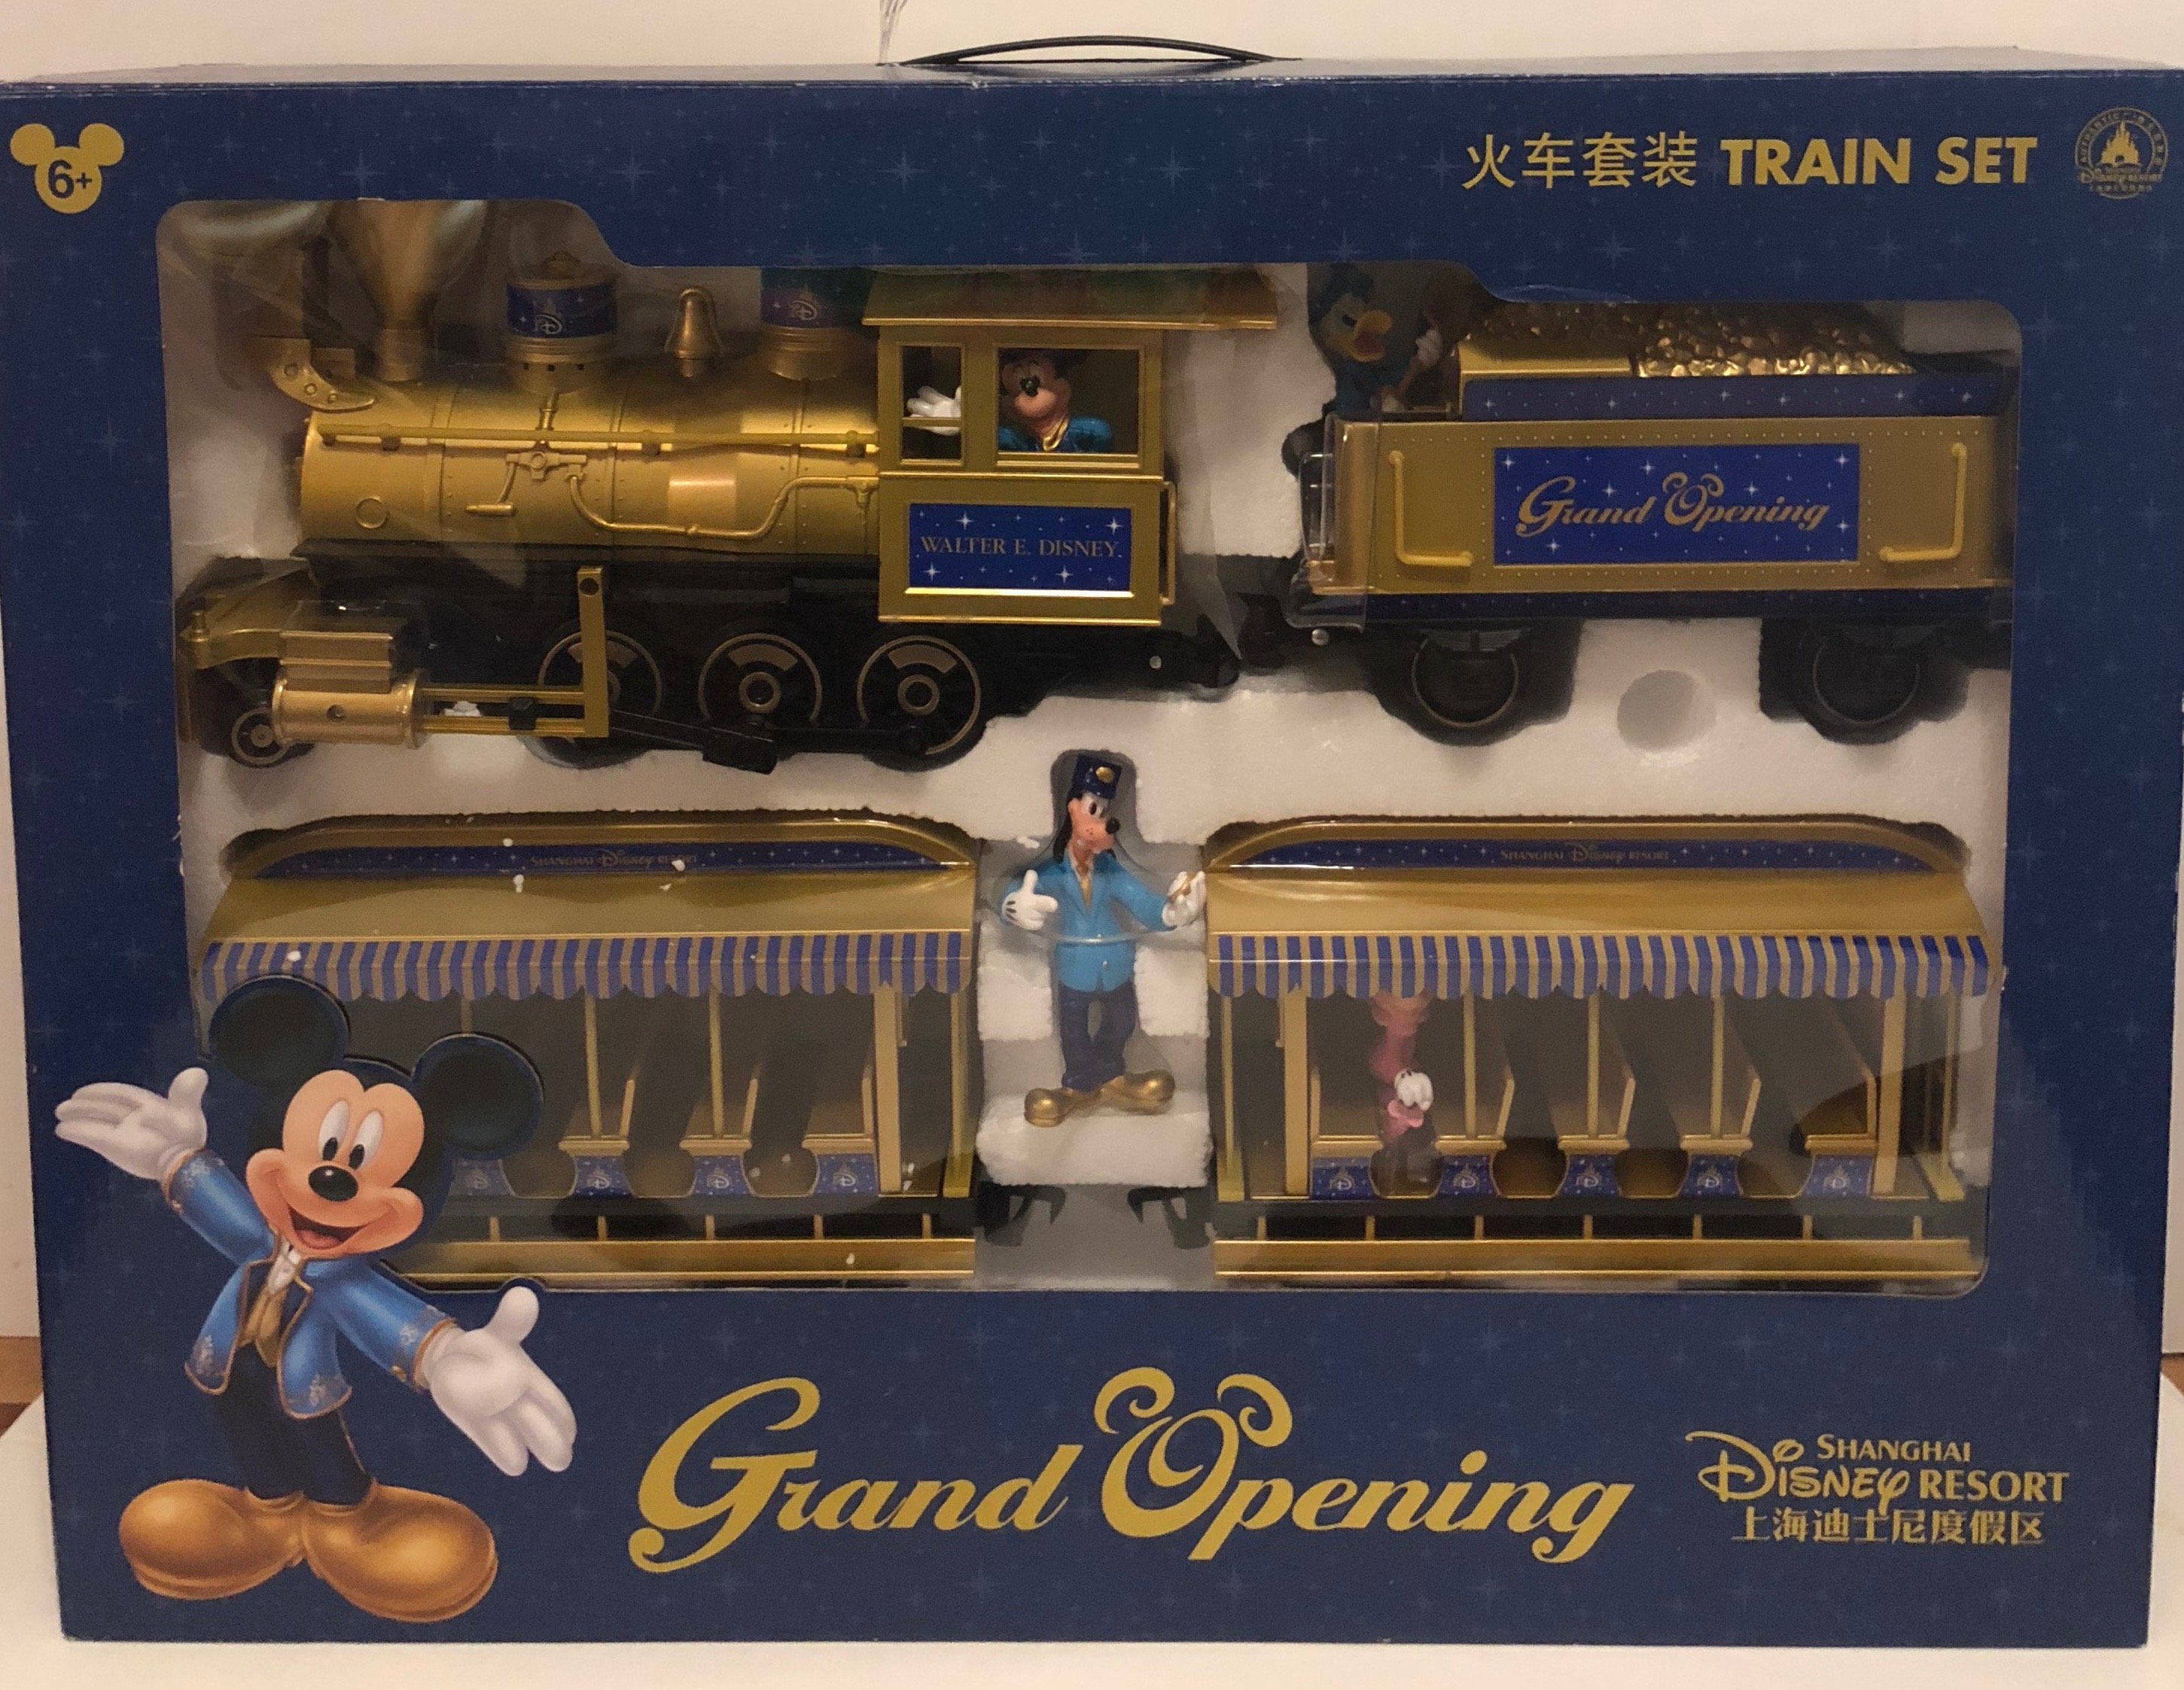 Walt Disney World Railroad: Steam trains off-track for 50th